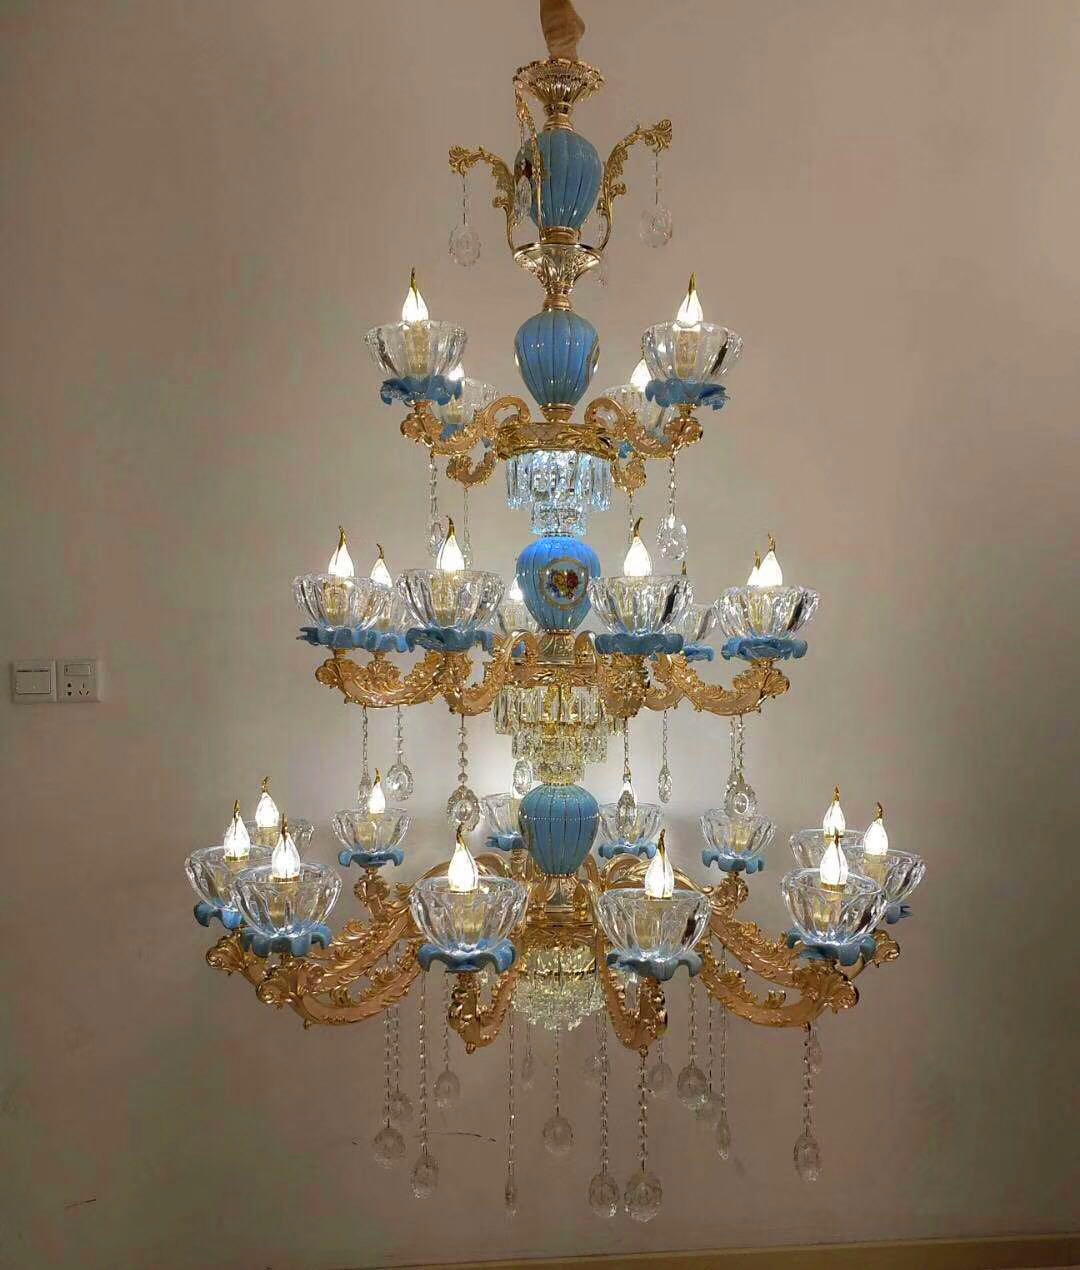 玻璃琉璃組合蠟燭造型多層吊燈